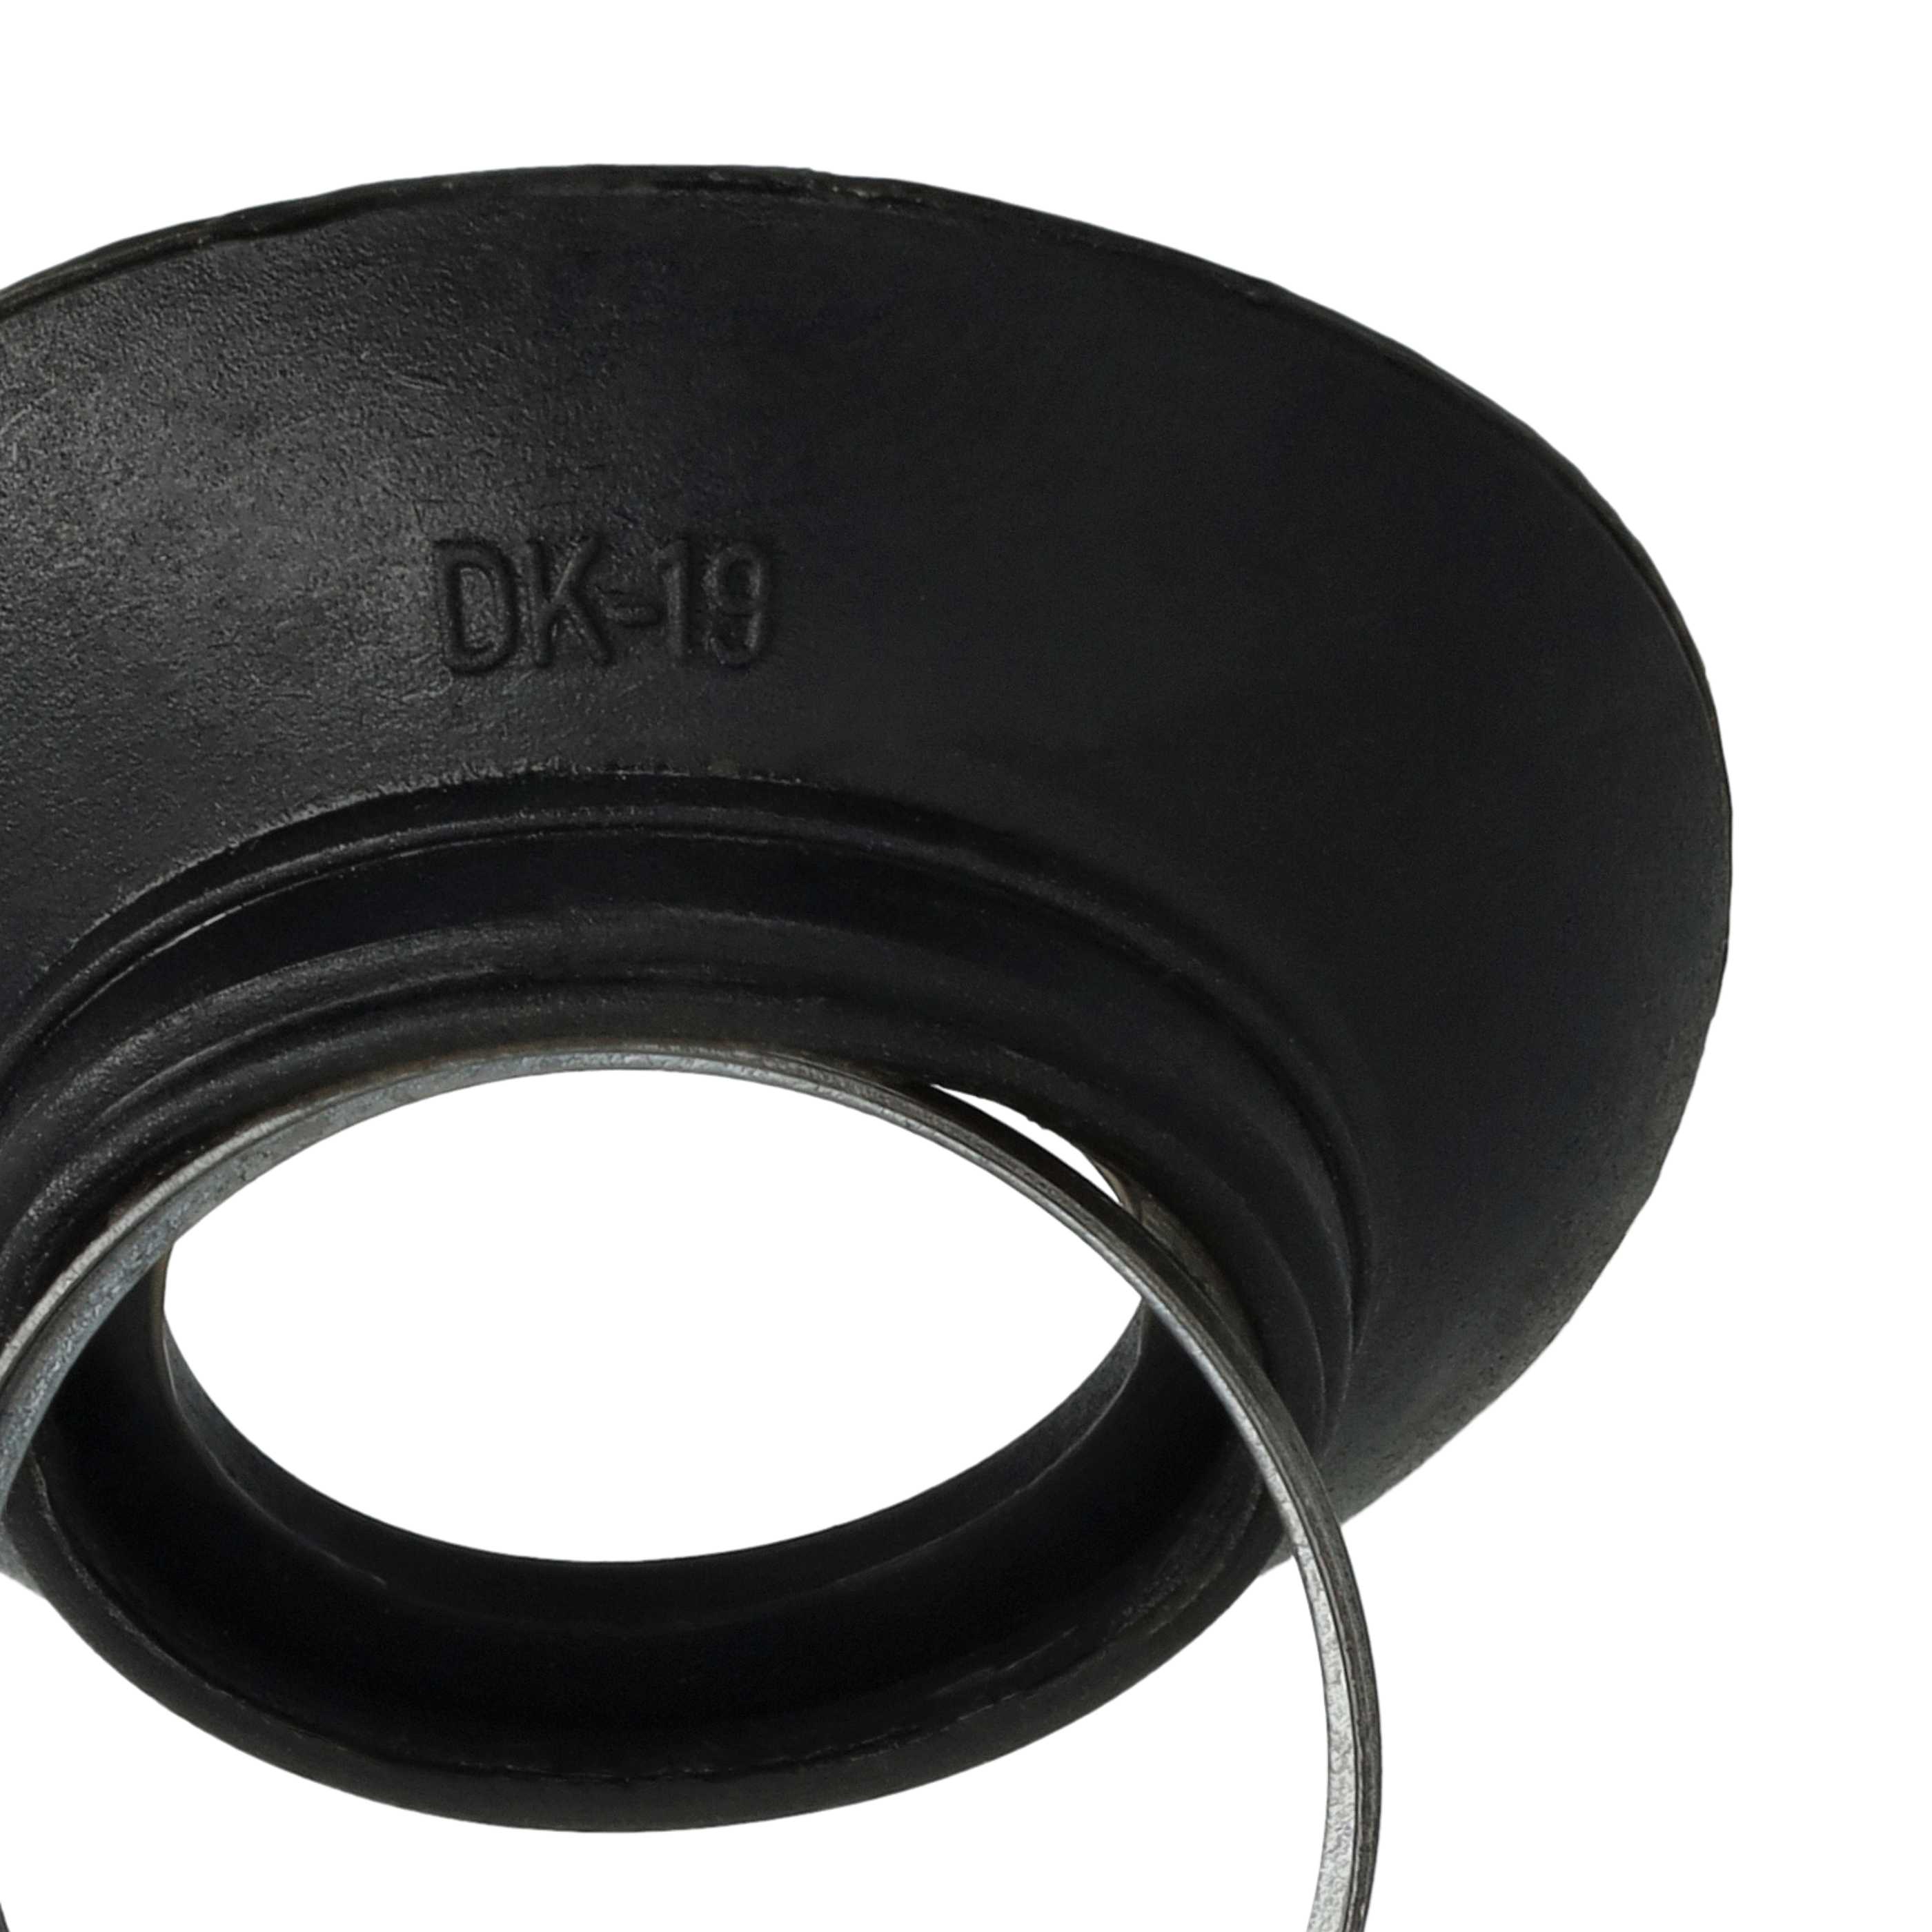 Visor ocular reemplaza Nikon DK-19 para cámaras Nikon D810a, etc., plástico